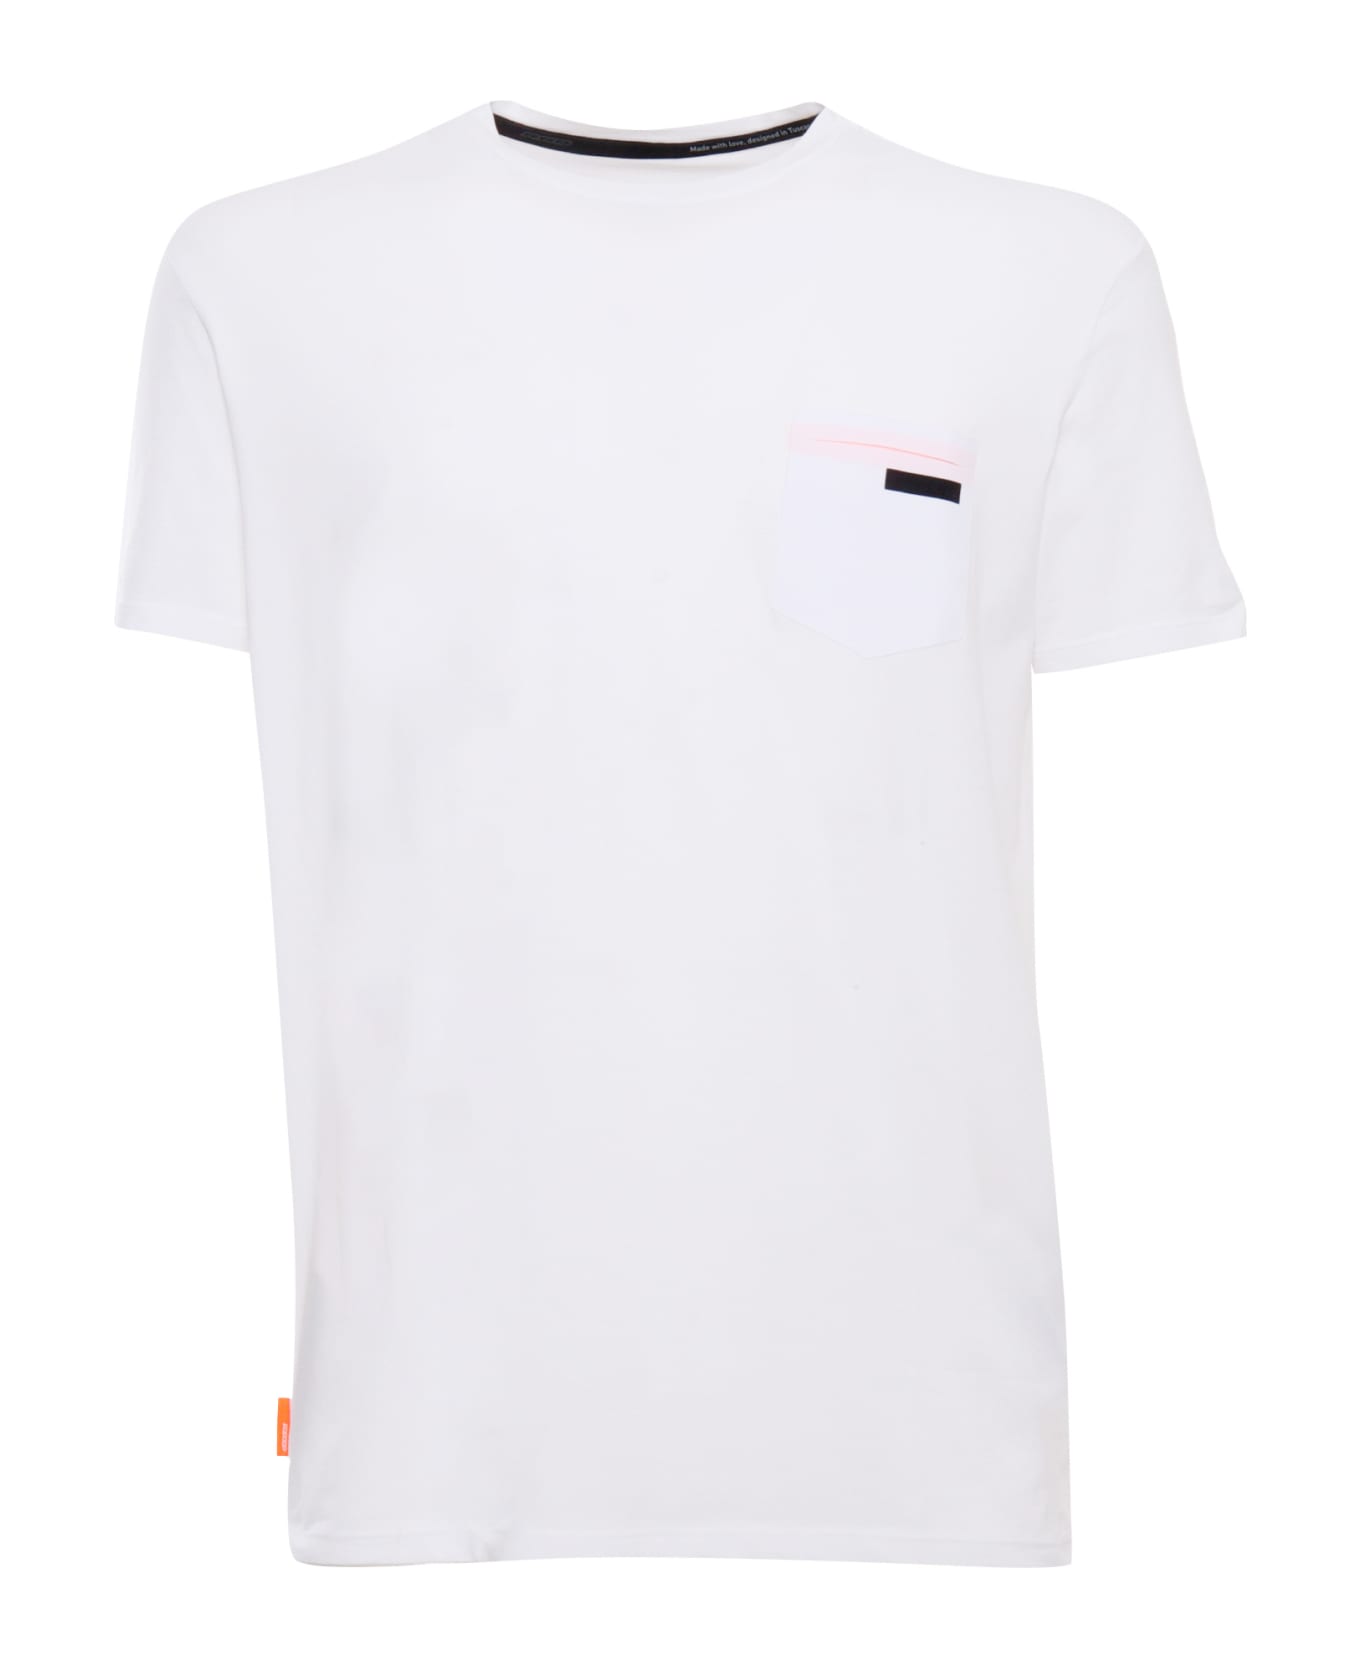 RRD - Roberto Ricci Design Revo White T-shirt - WHITE シャツ